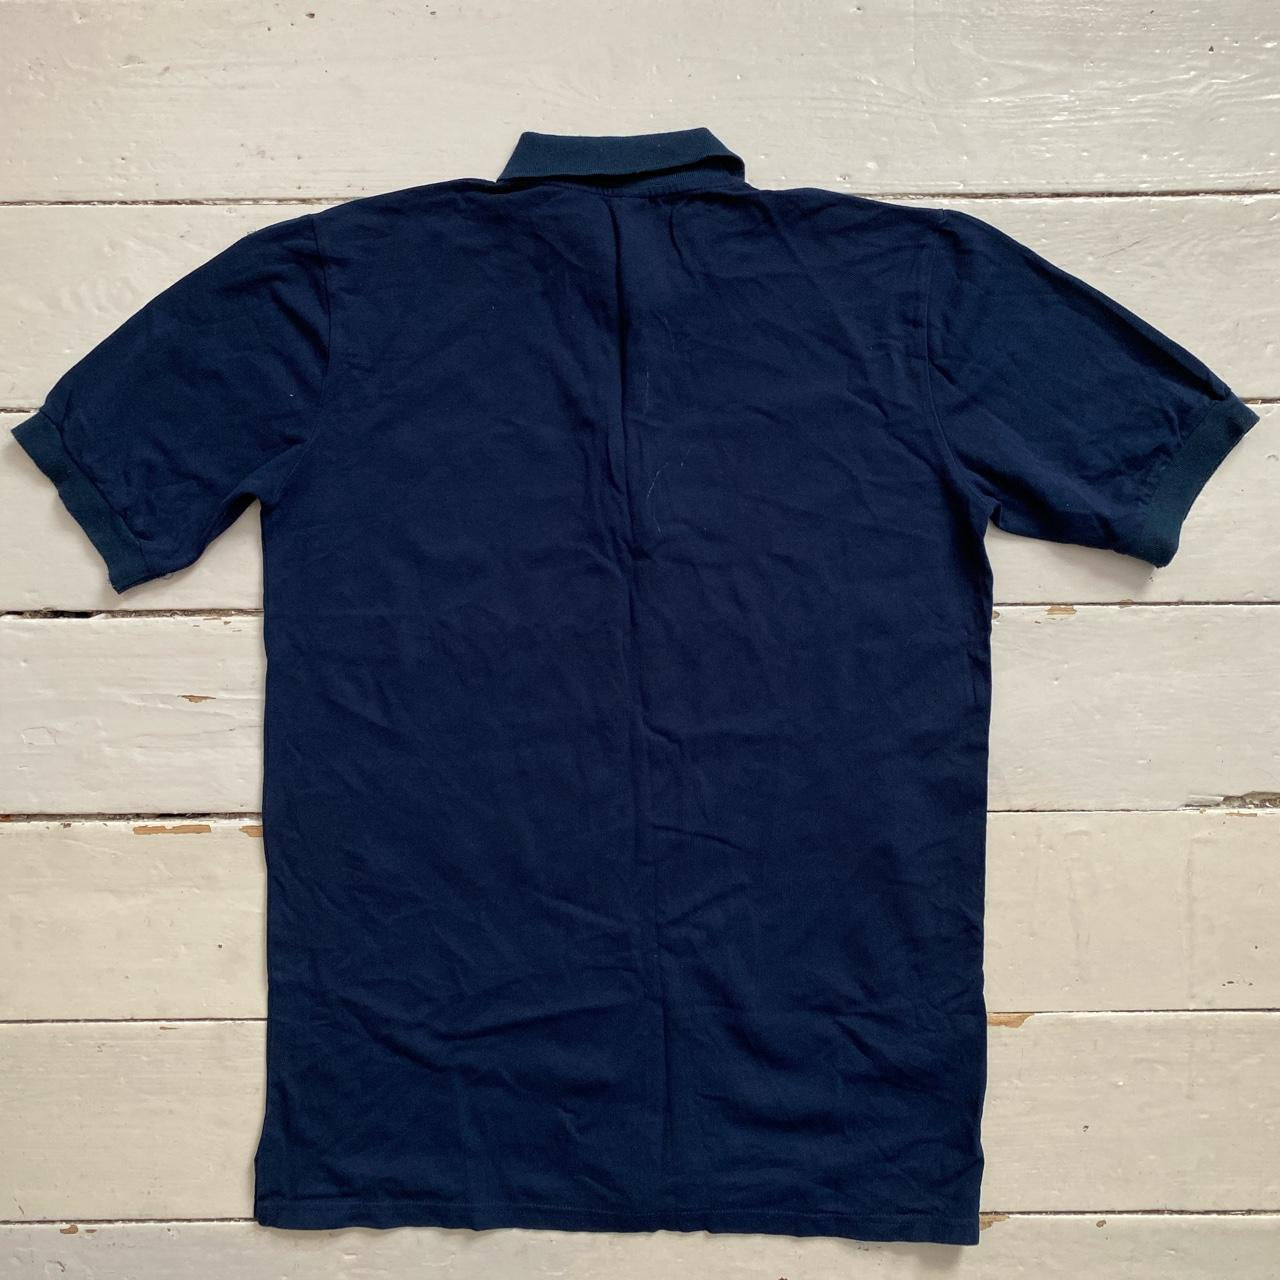 Patta Navy Polo Shirt (XL)